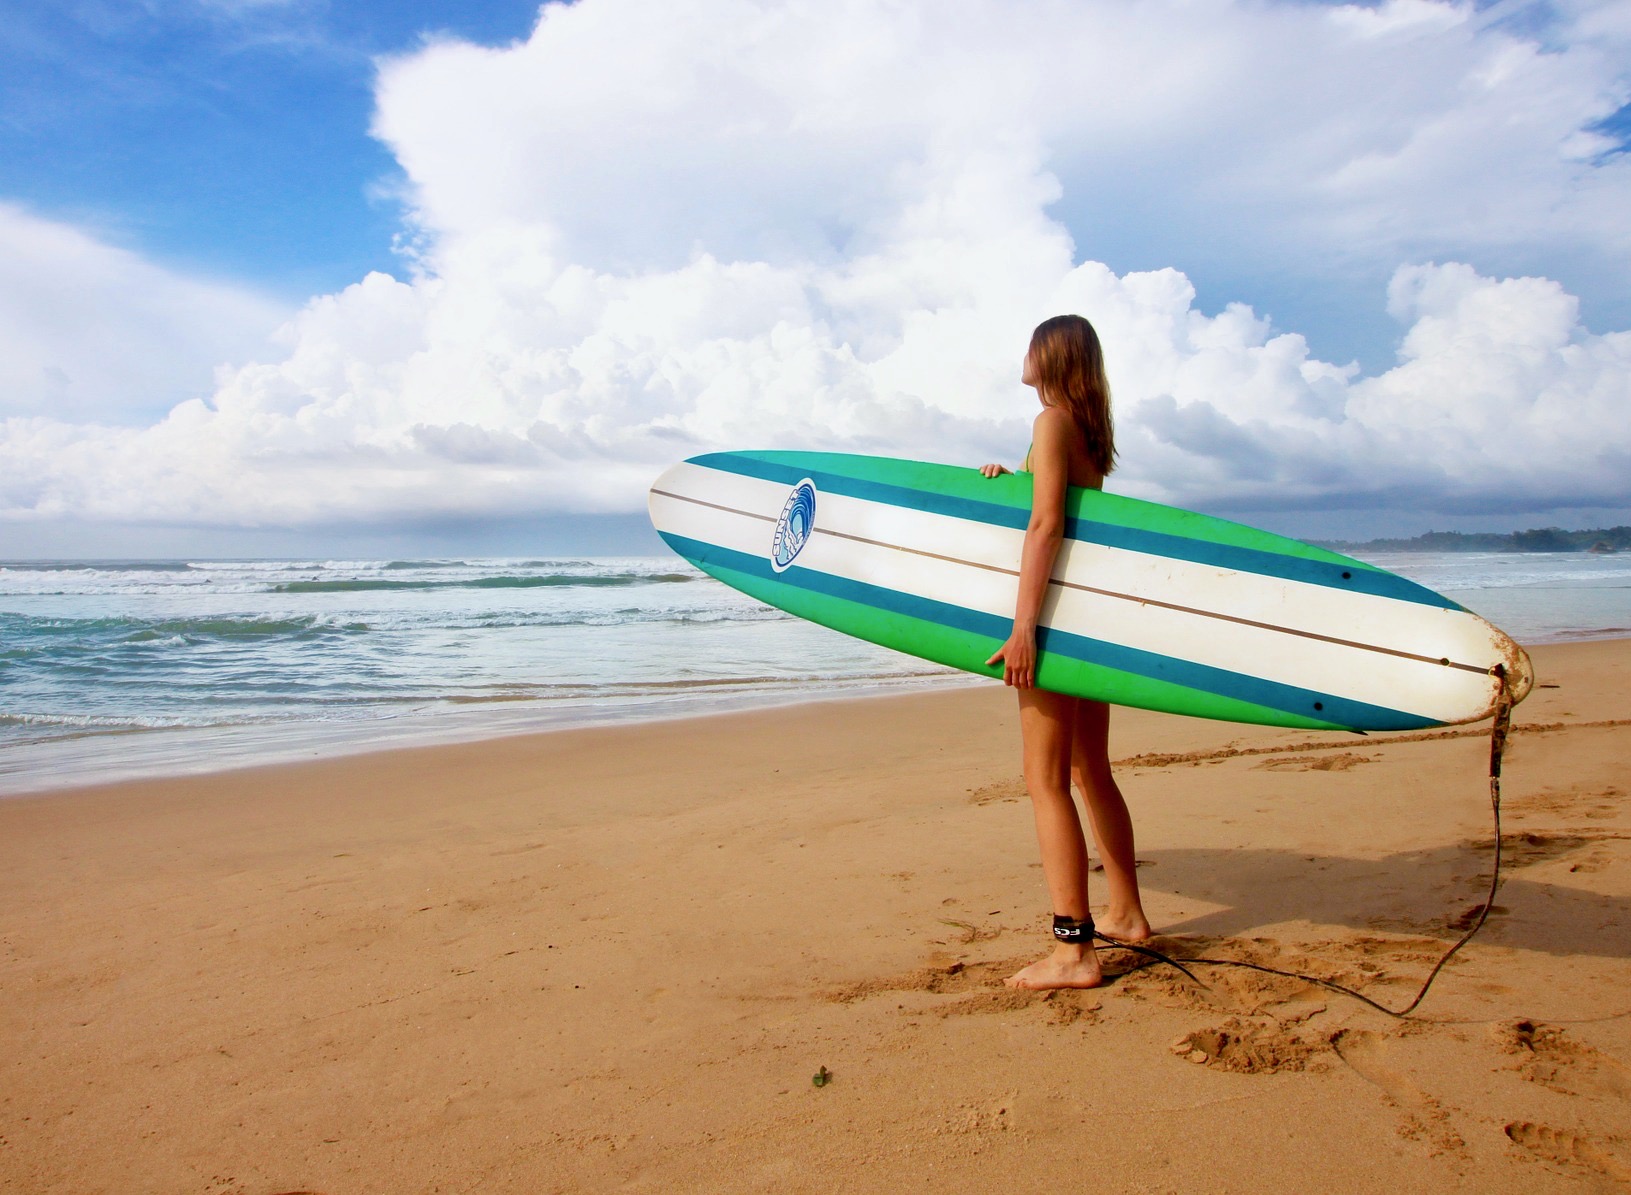 Una chica con una tabla de surf mirando al mar buscando olas antes de meterse en el agua.